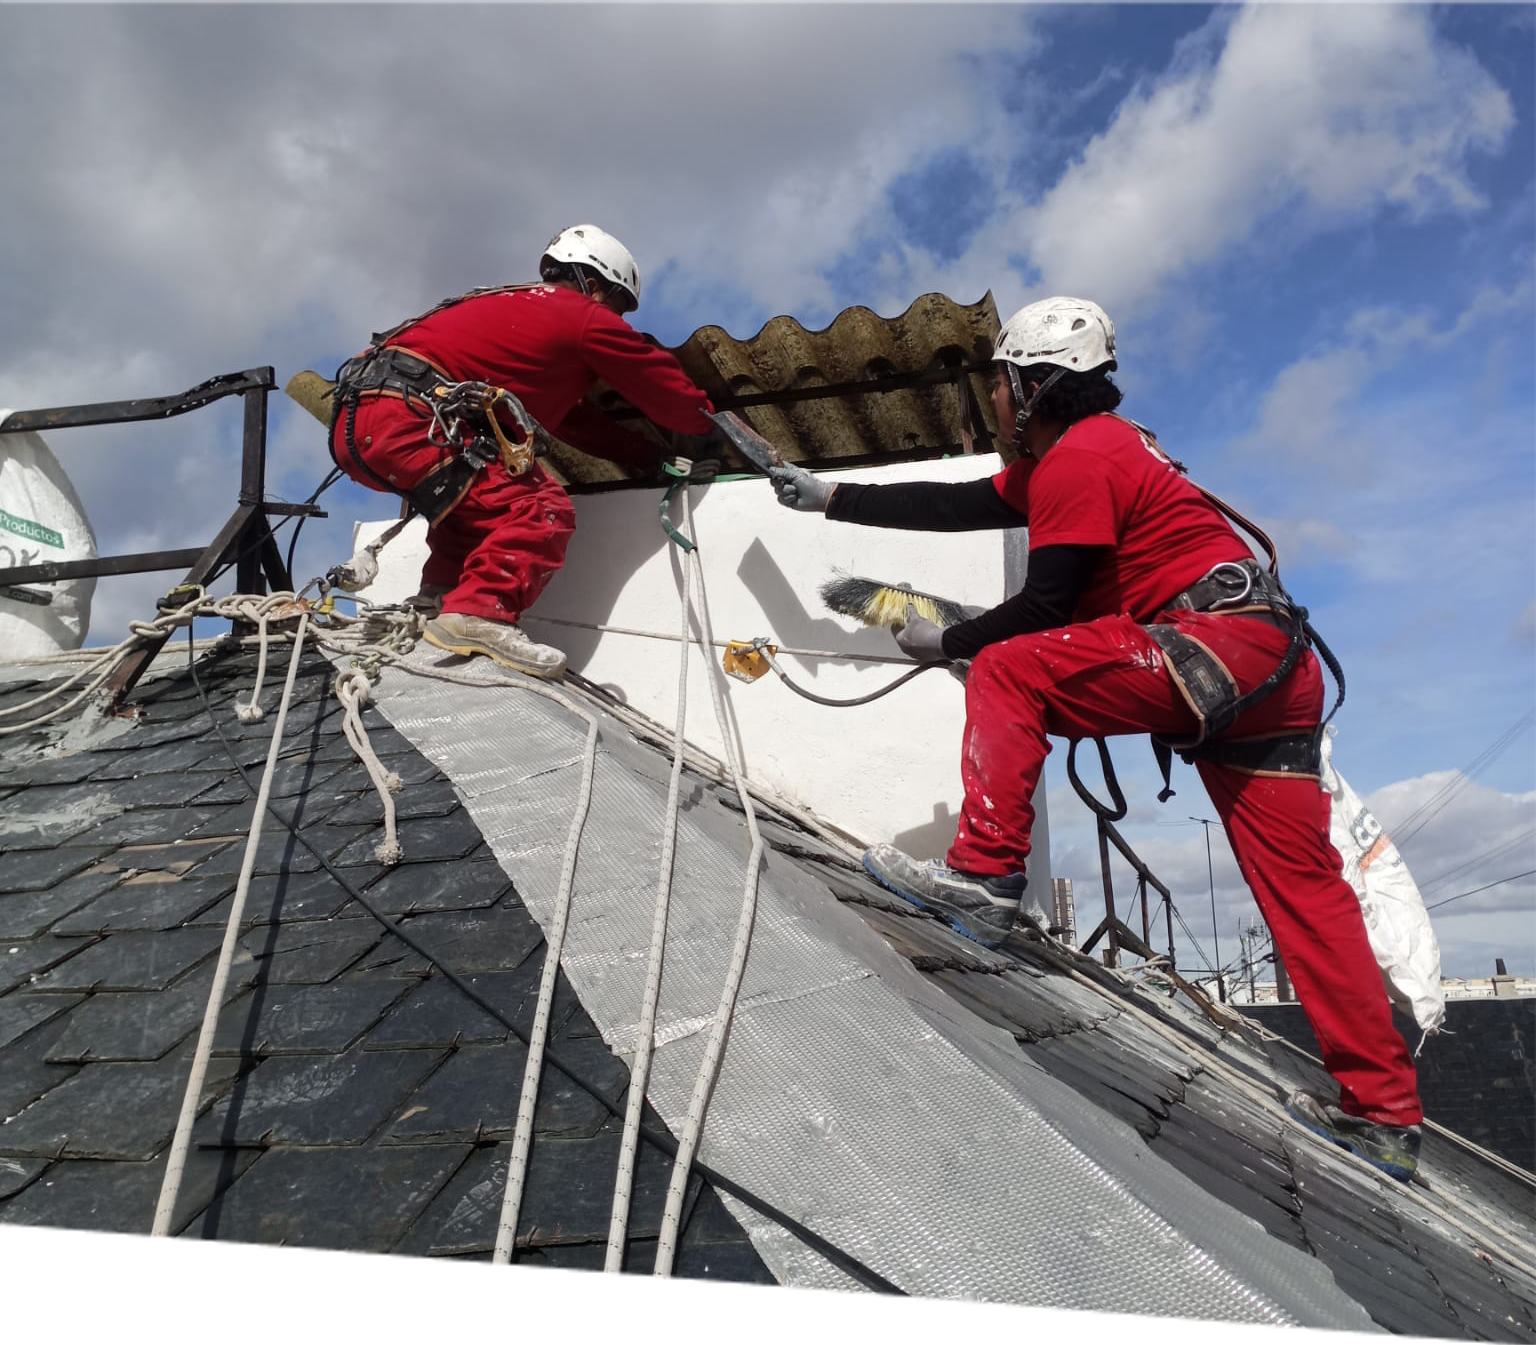 Dos trabajadores con equipos de seguridad realizan trabajos de rehabilitación en el tejado de un edificio histórico, restaurando la estructura y aplicando pintura en un día nublado, enfatizando la conservación del patrimonio arquitectónico.